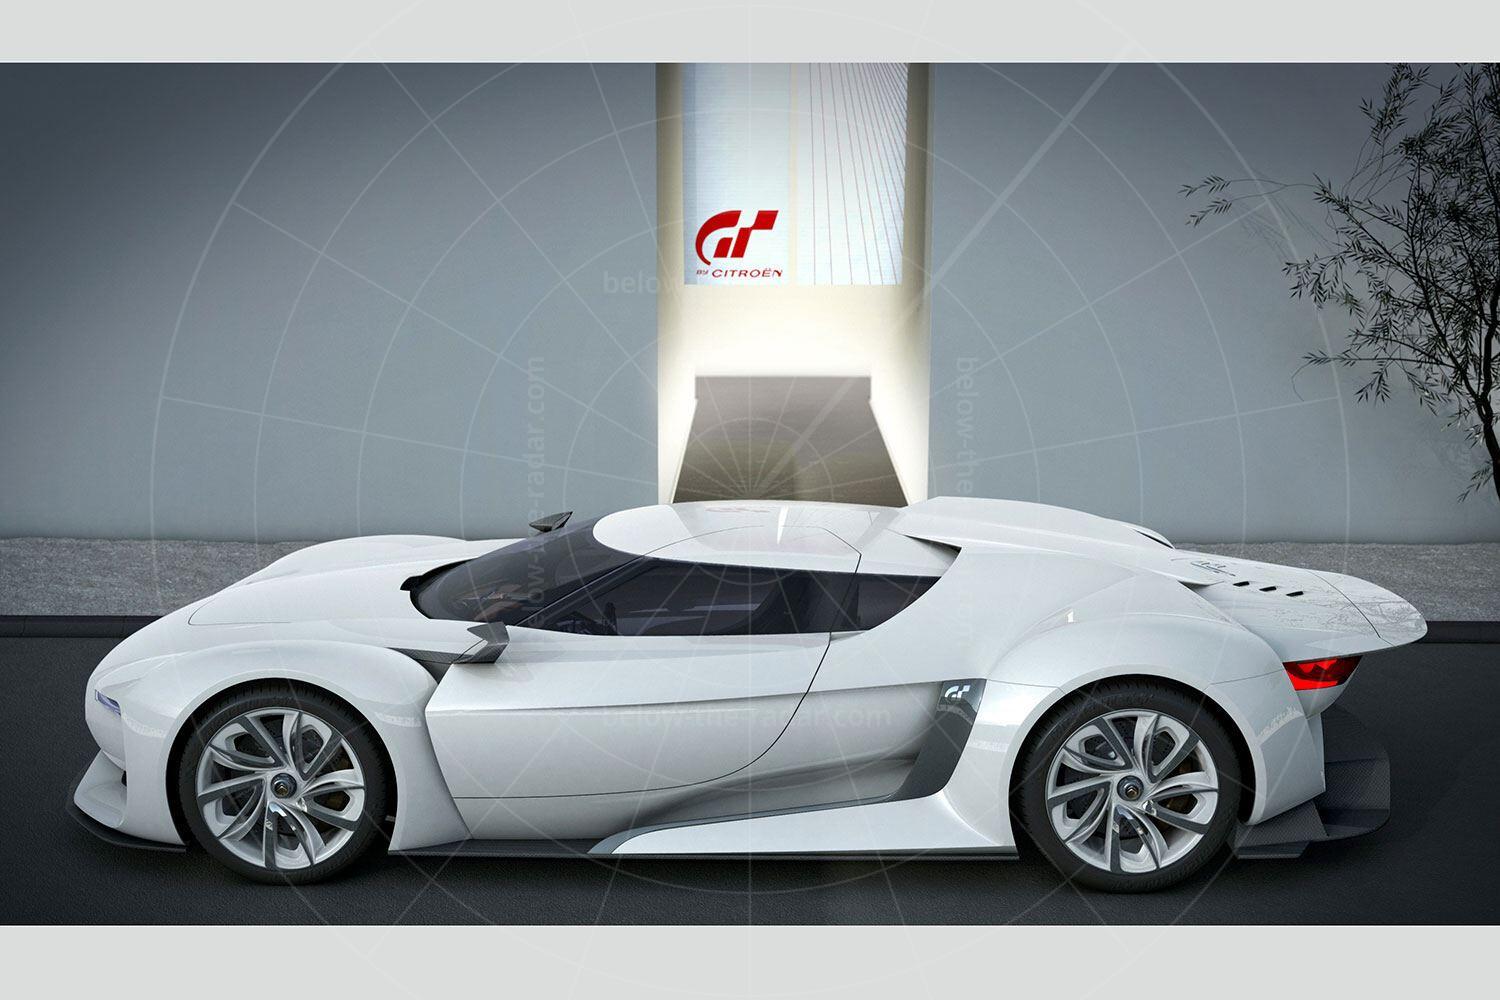 Citroen GT concept Pic: Citroen | Citroen GT concept